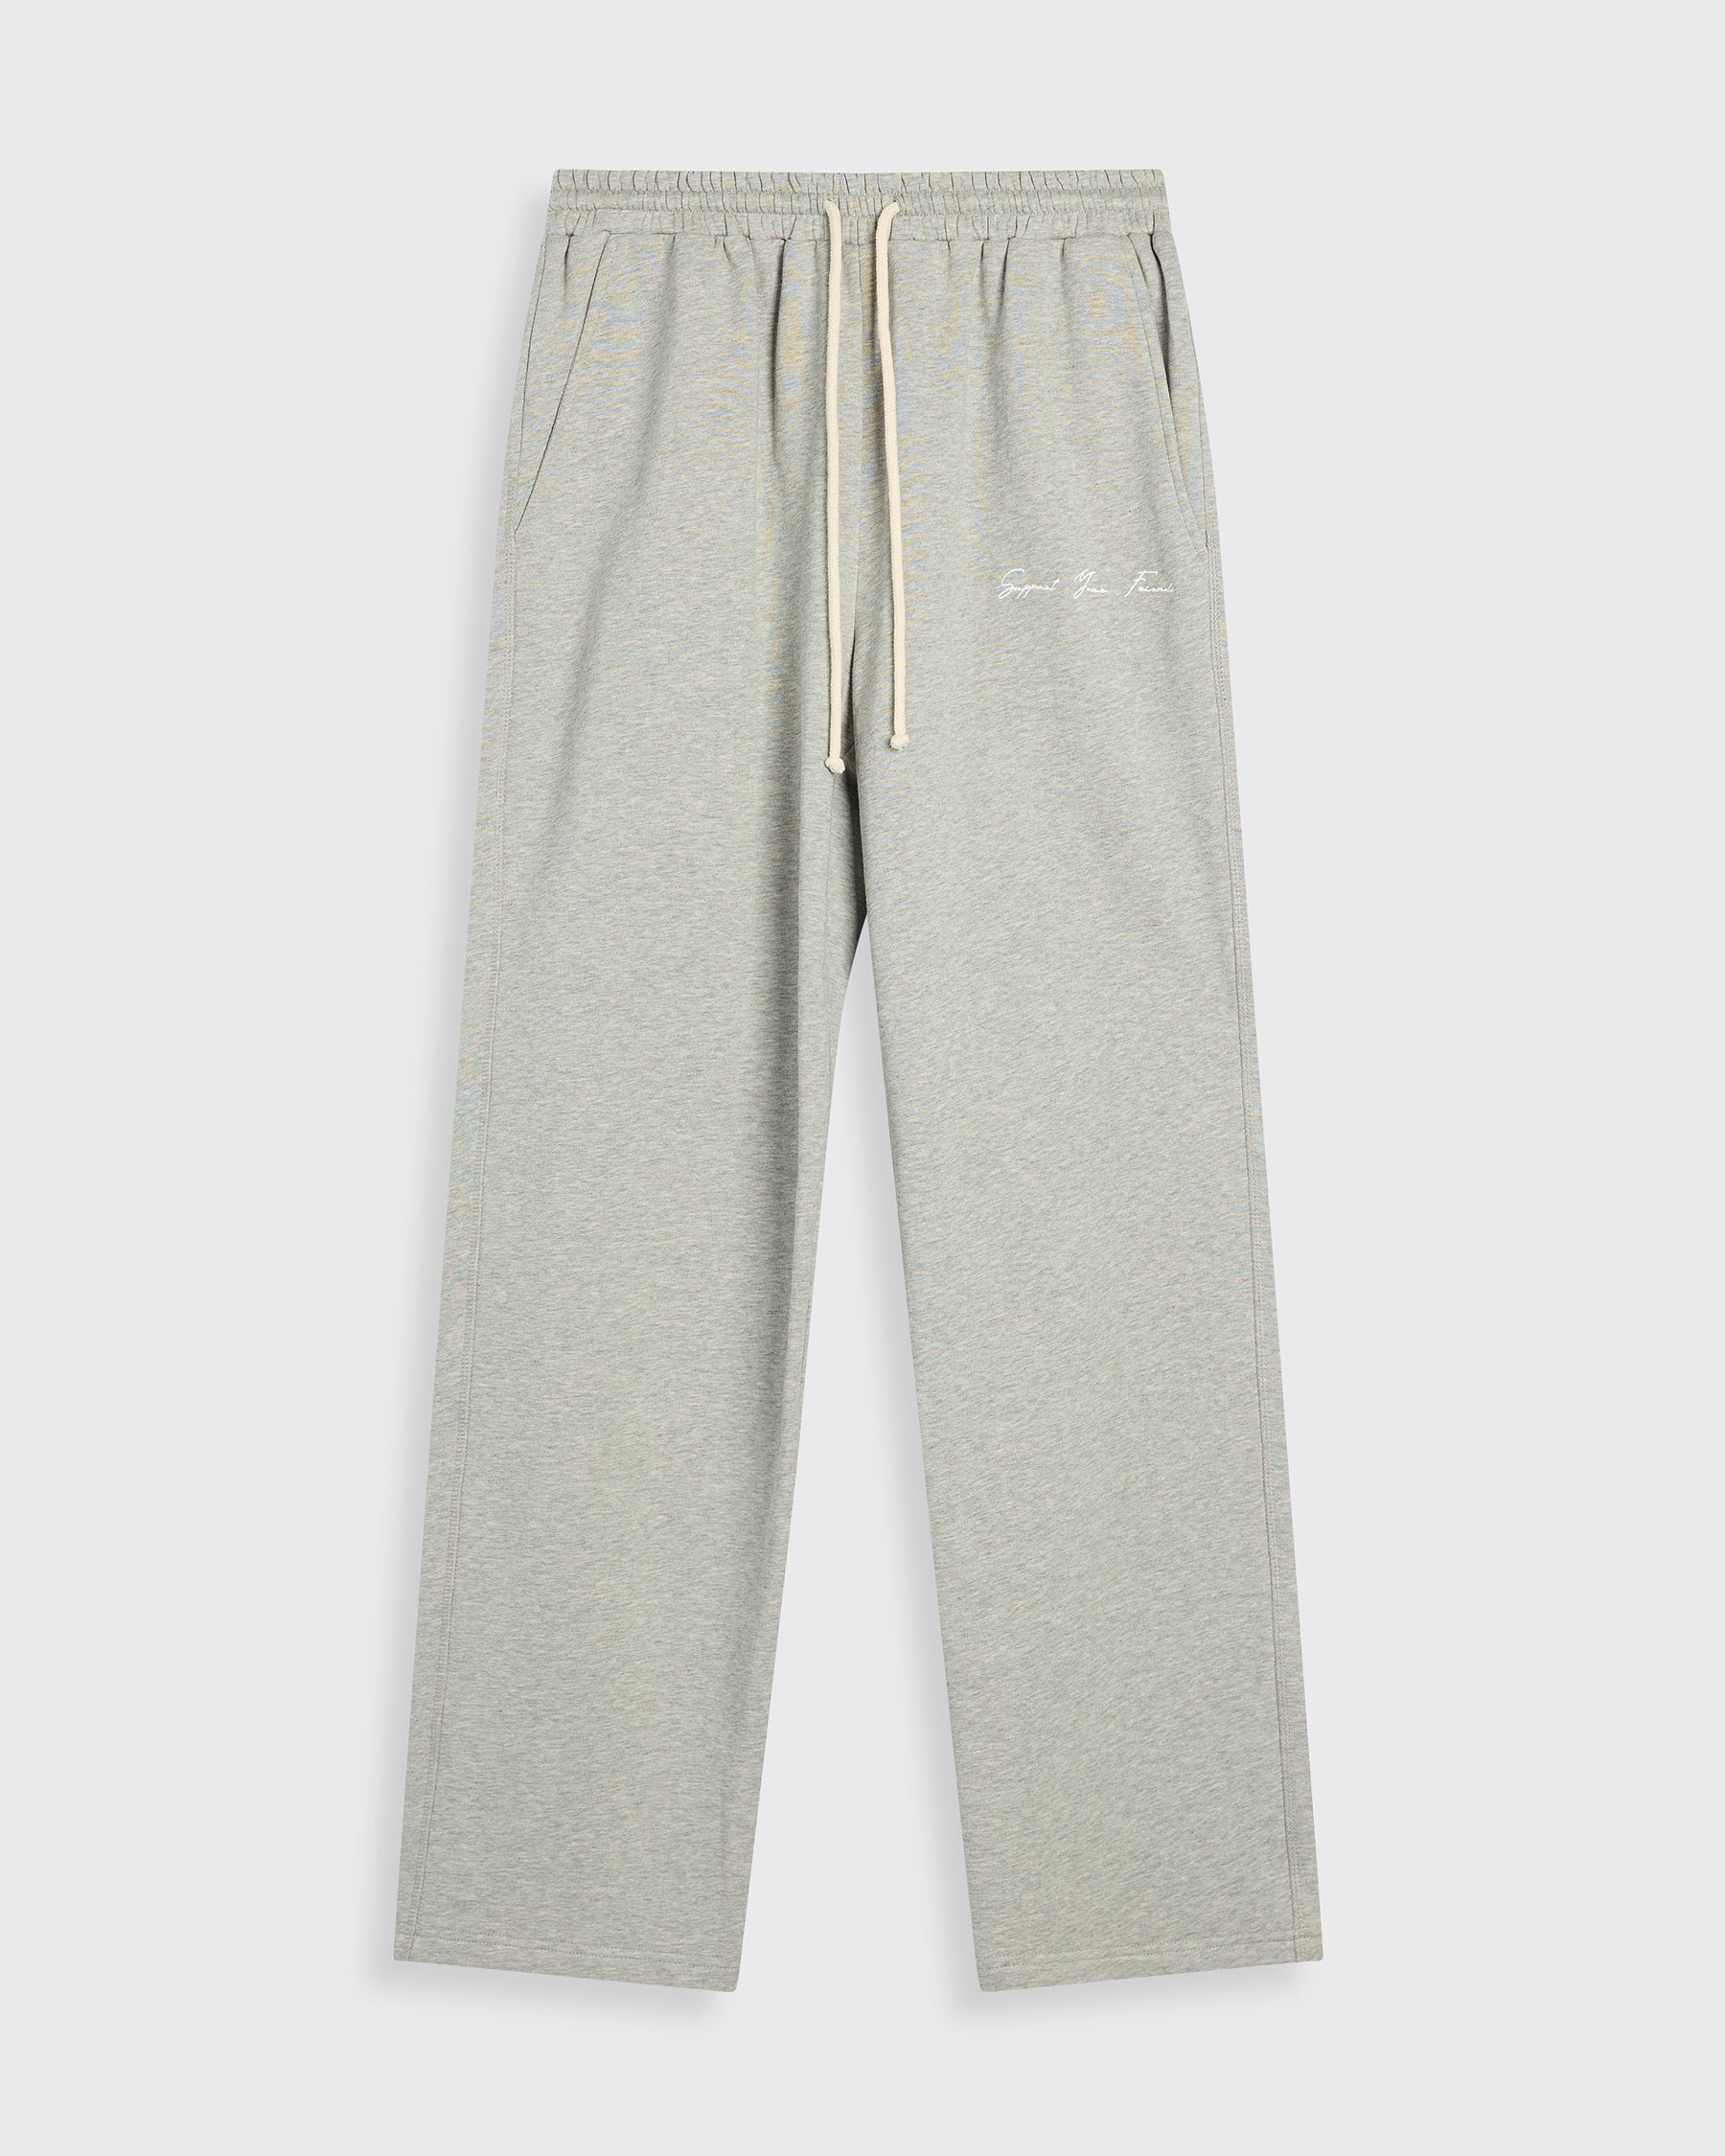 SxS Crew Sweat Pants (Grey)